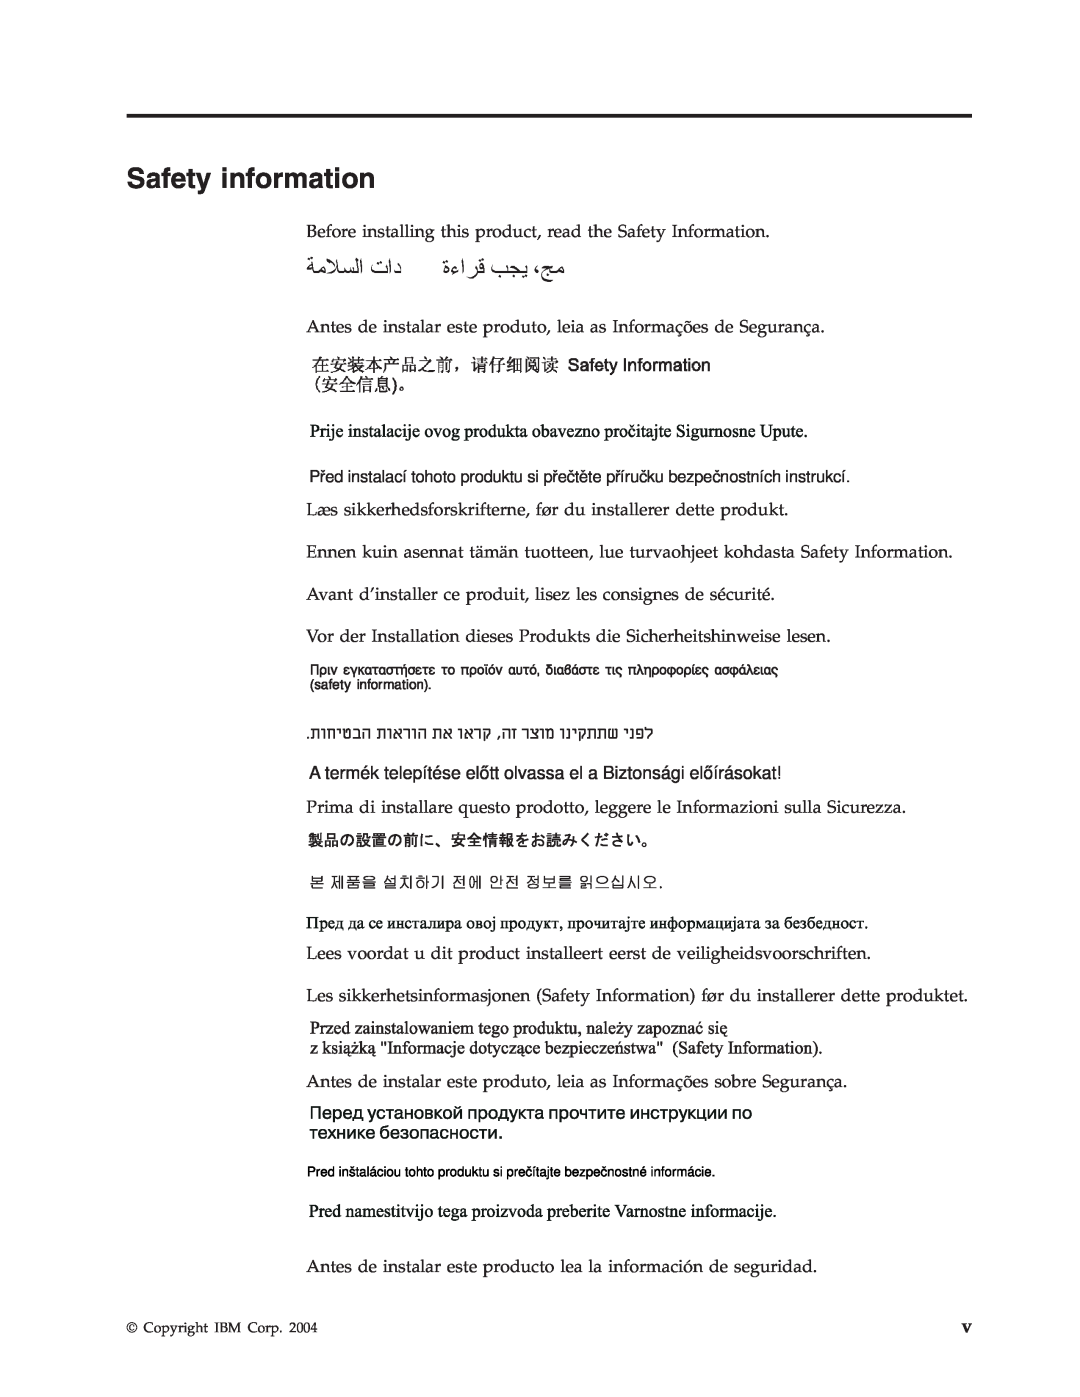 IBM M400 manual Safety information 